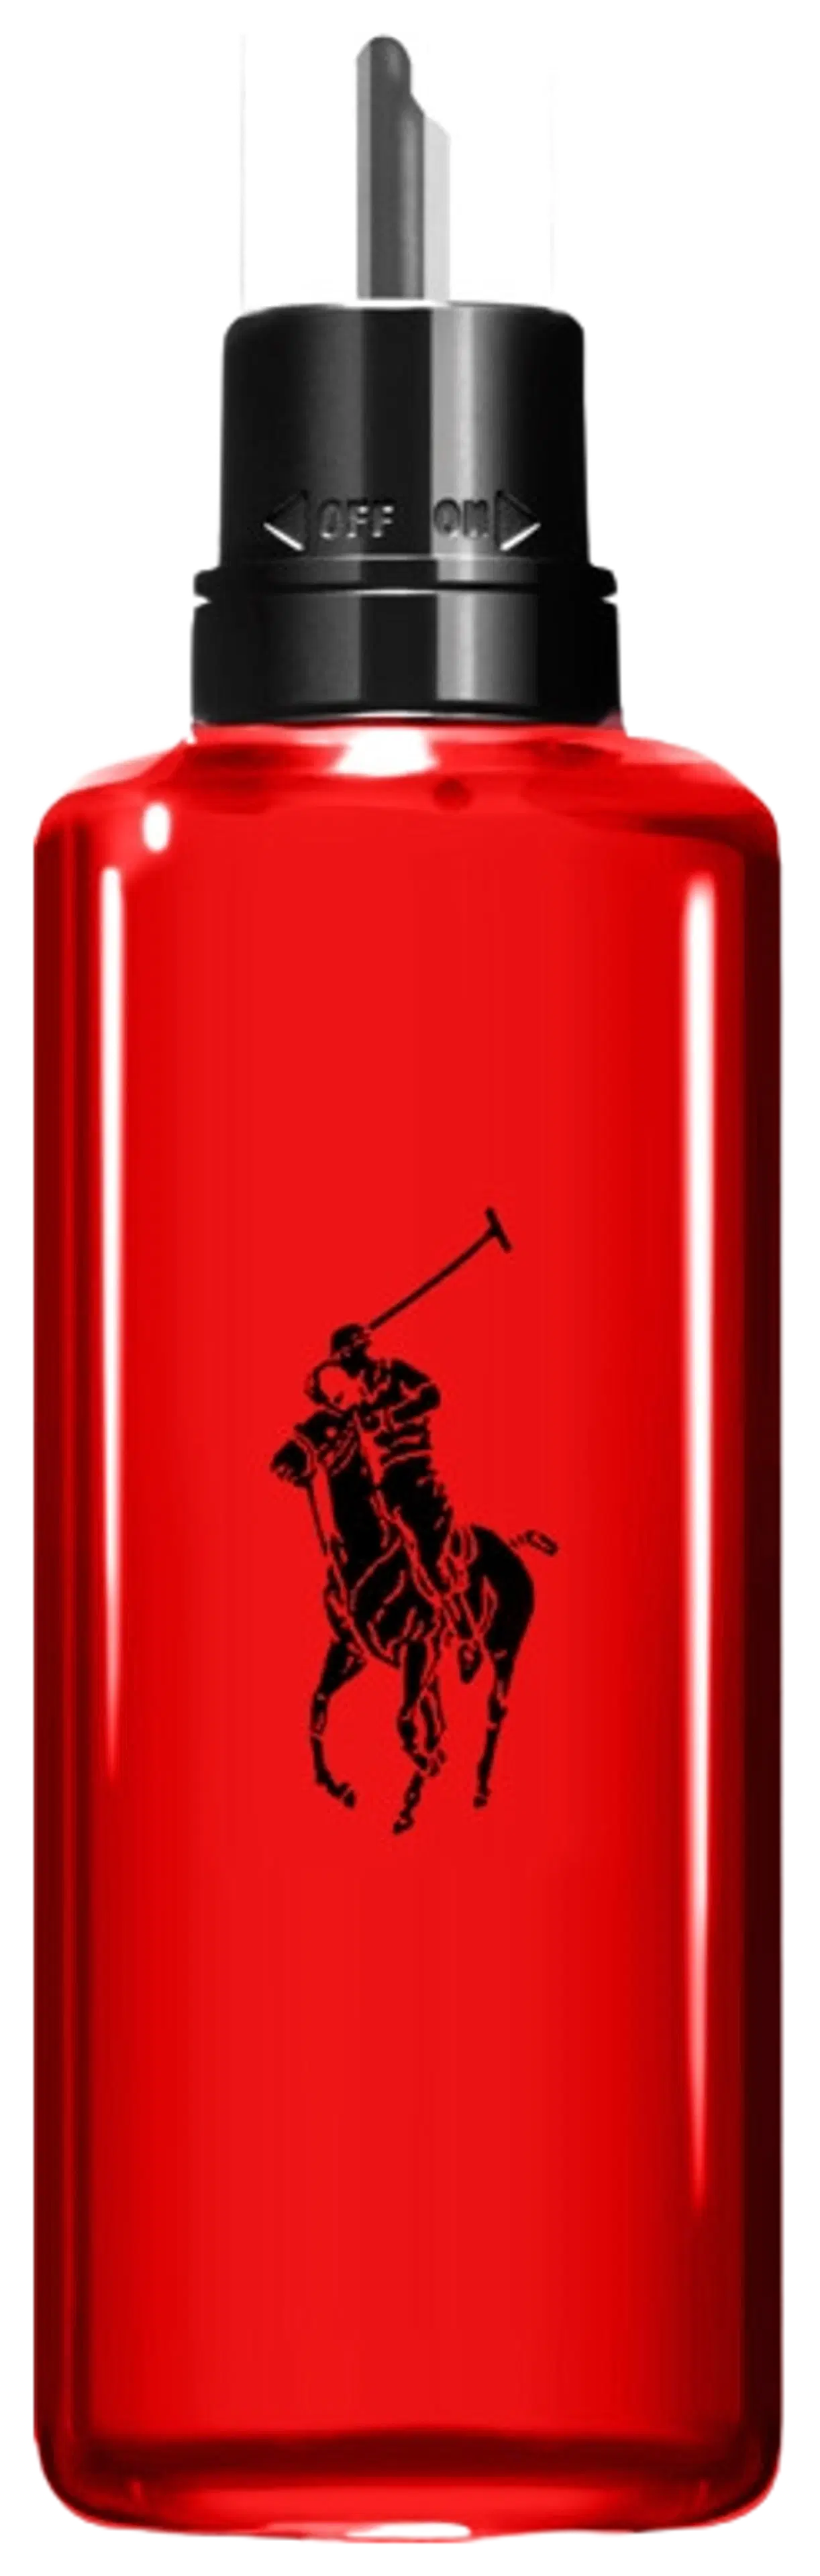 Ralph Lauren Polo Red EdT täyttöpakkaus 150 ml